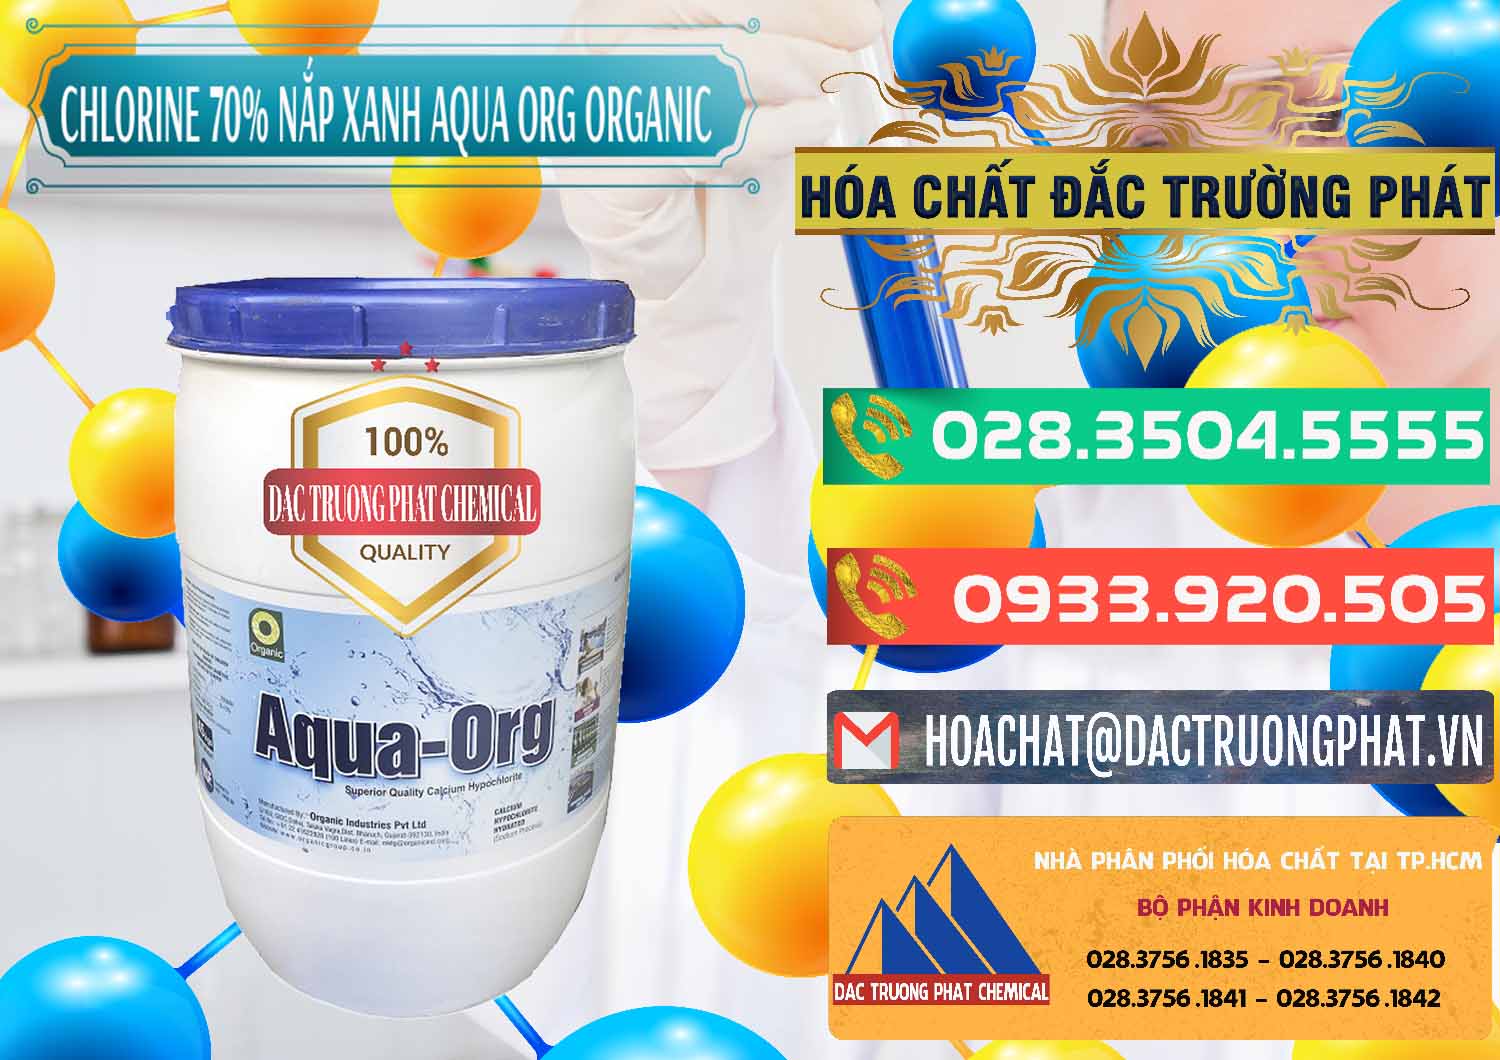 Đơn vị bán & cung cấp Chlorine – Clorin 70% Thùng Tròn Nắp Xanh Aqua ORG Organic Ấn Độ India - 0247 - Công ty chuyên cung cấp & bán hóa chất tại TP.HCM - congtyhoachat.com.vn